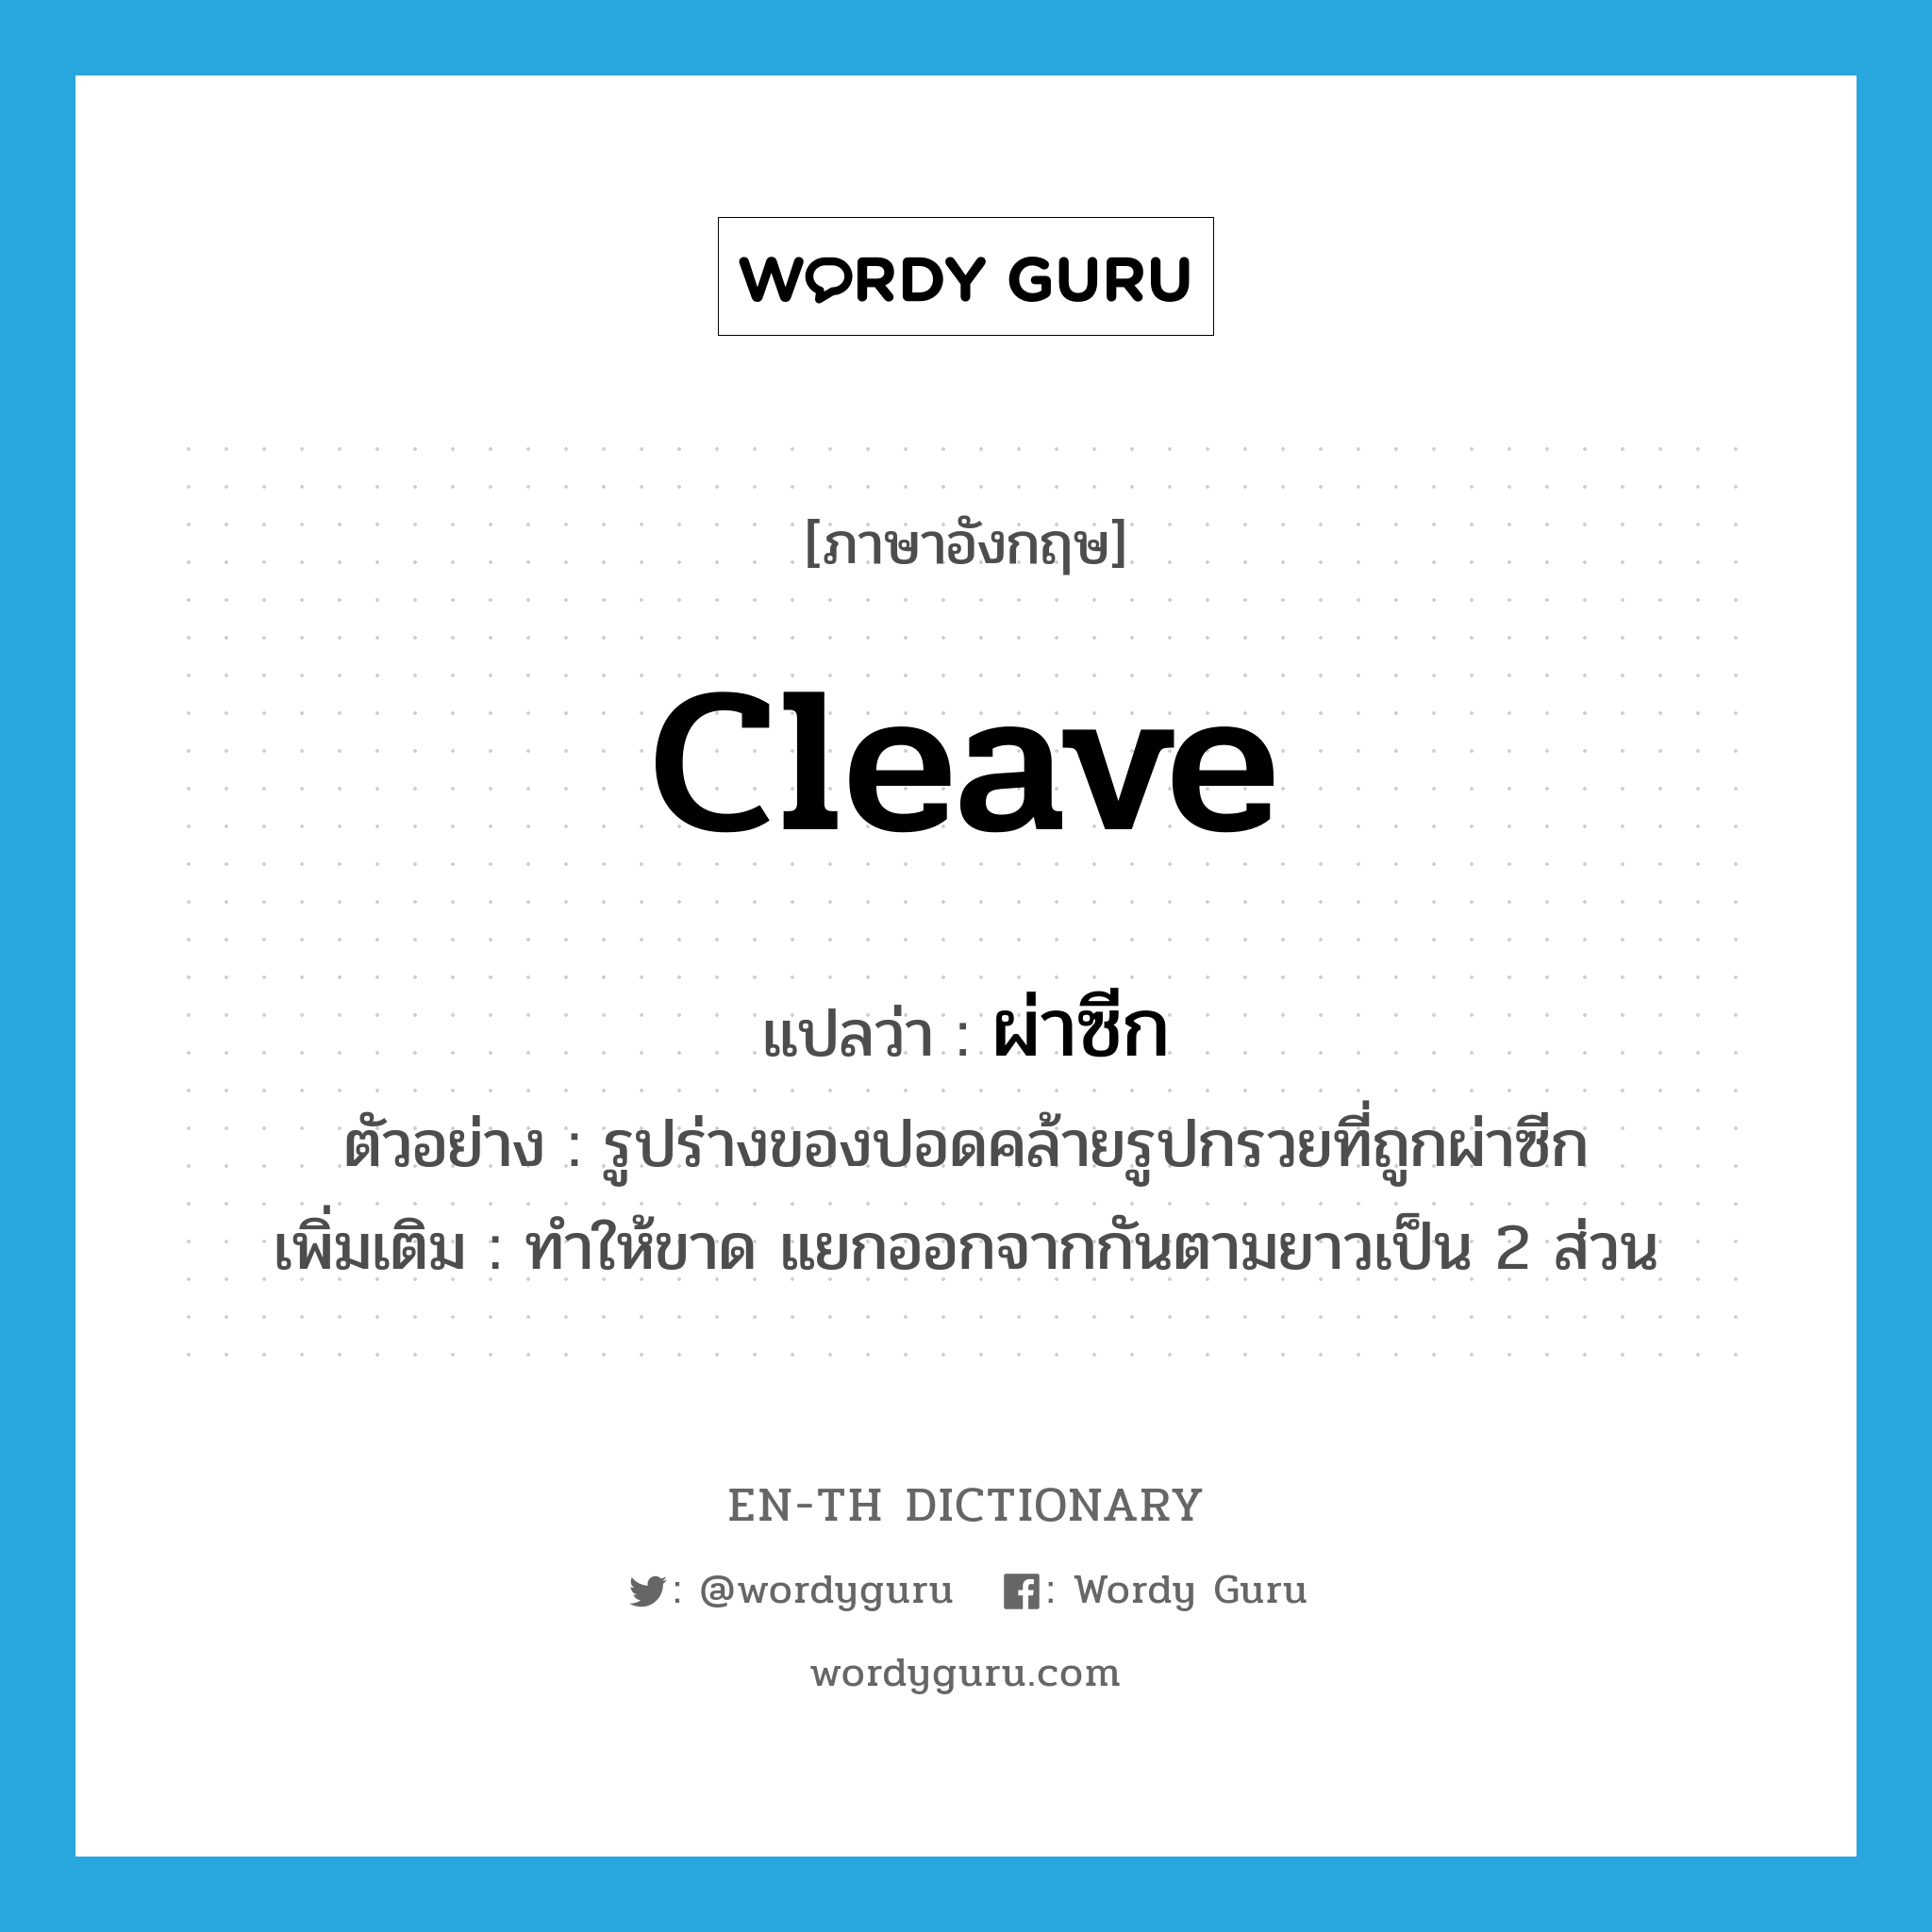 cleave แปลว่า?, คำศัพท์ภาษาอังกฤษ cleave แปลว่า ผ่าซีก ประเภท V ตัวอย่าง รูปร่างของปอดคล้ายรูปกรวยที่ถูกผ่าซีก เพิ่มเติม ทำให้ขาด แยกออกจากกันตามยาวเป็น 2 ส่วน หมวด V